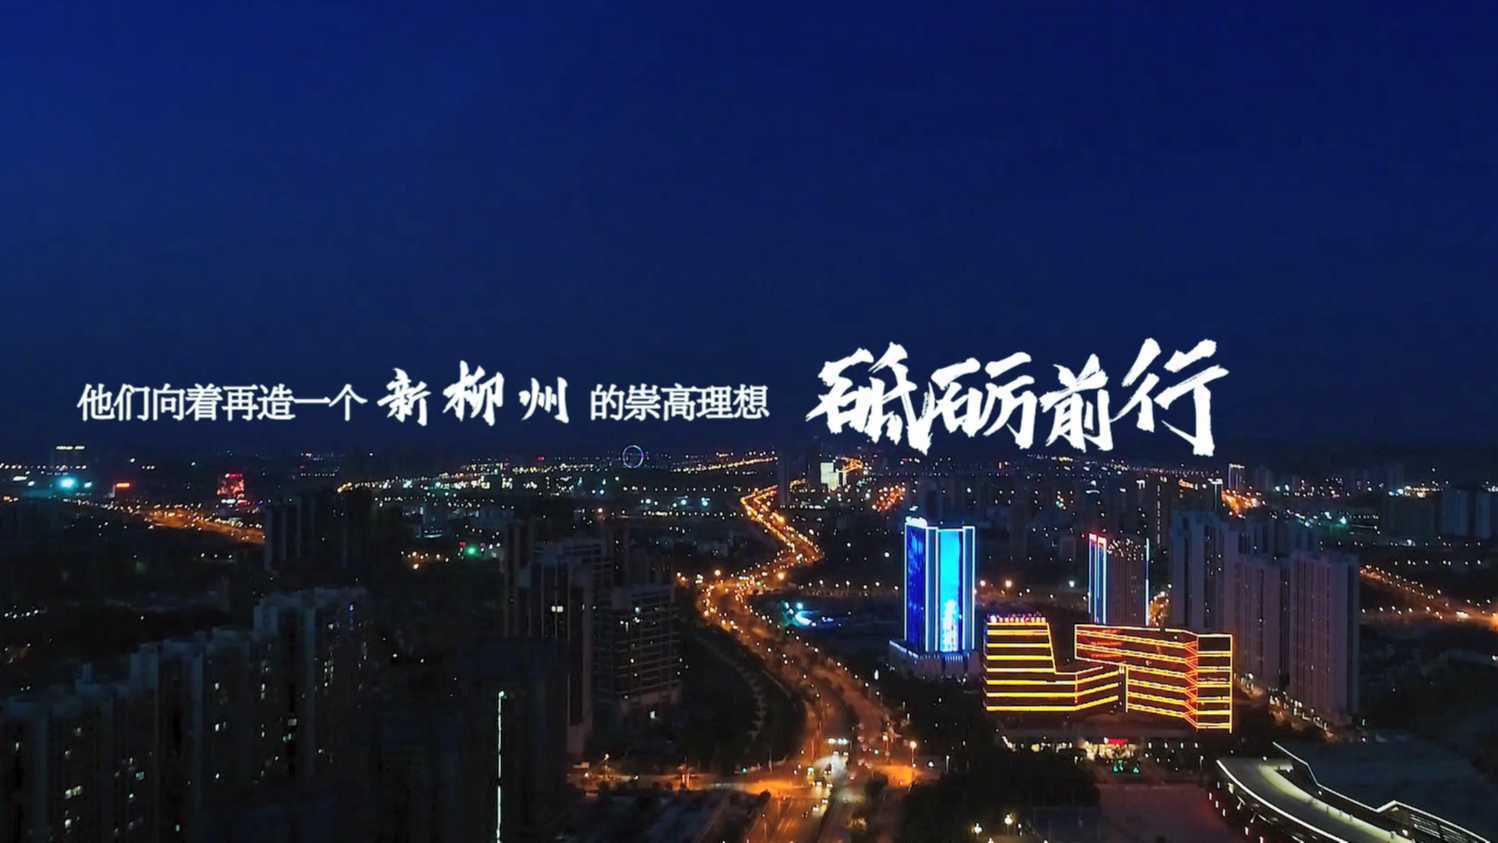 柳州市东城集团建开公司宣传片